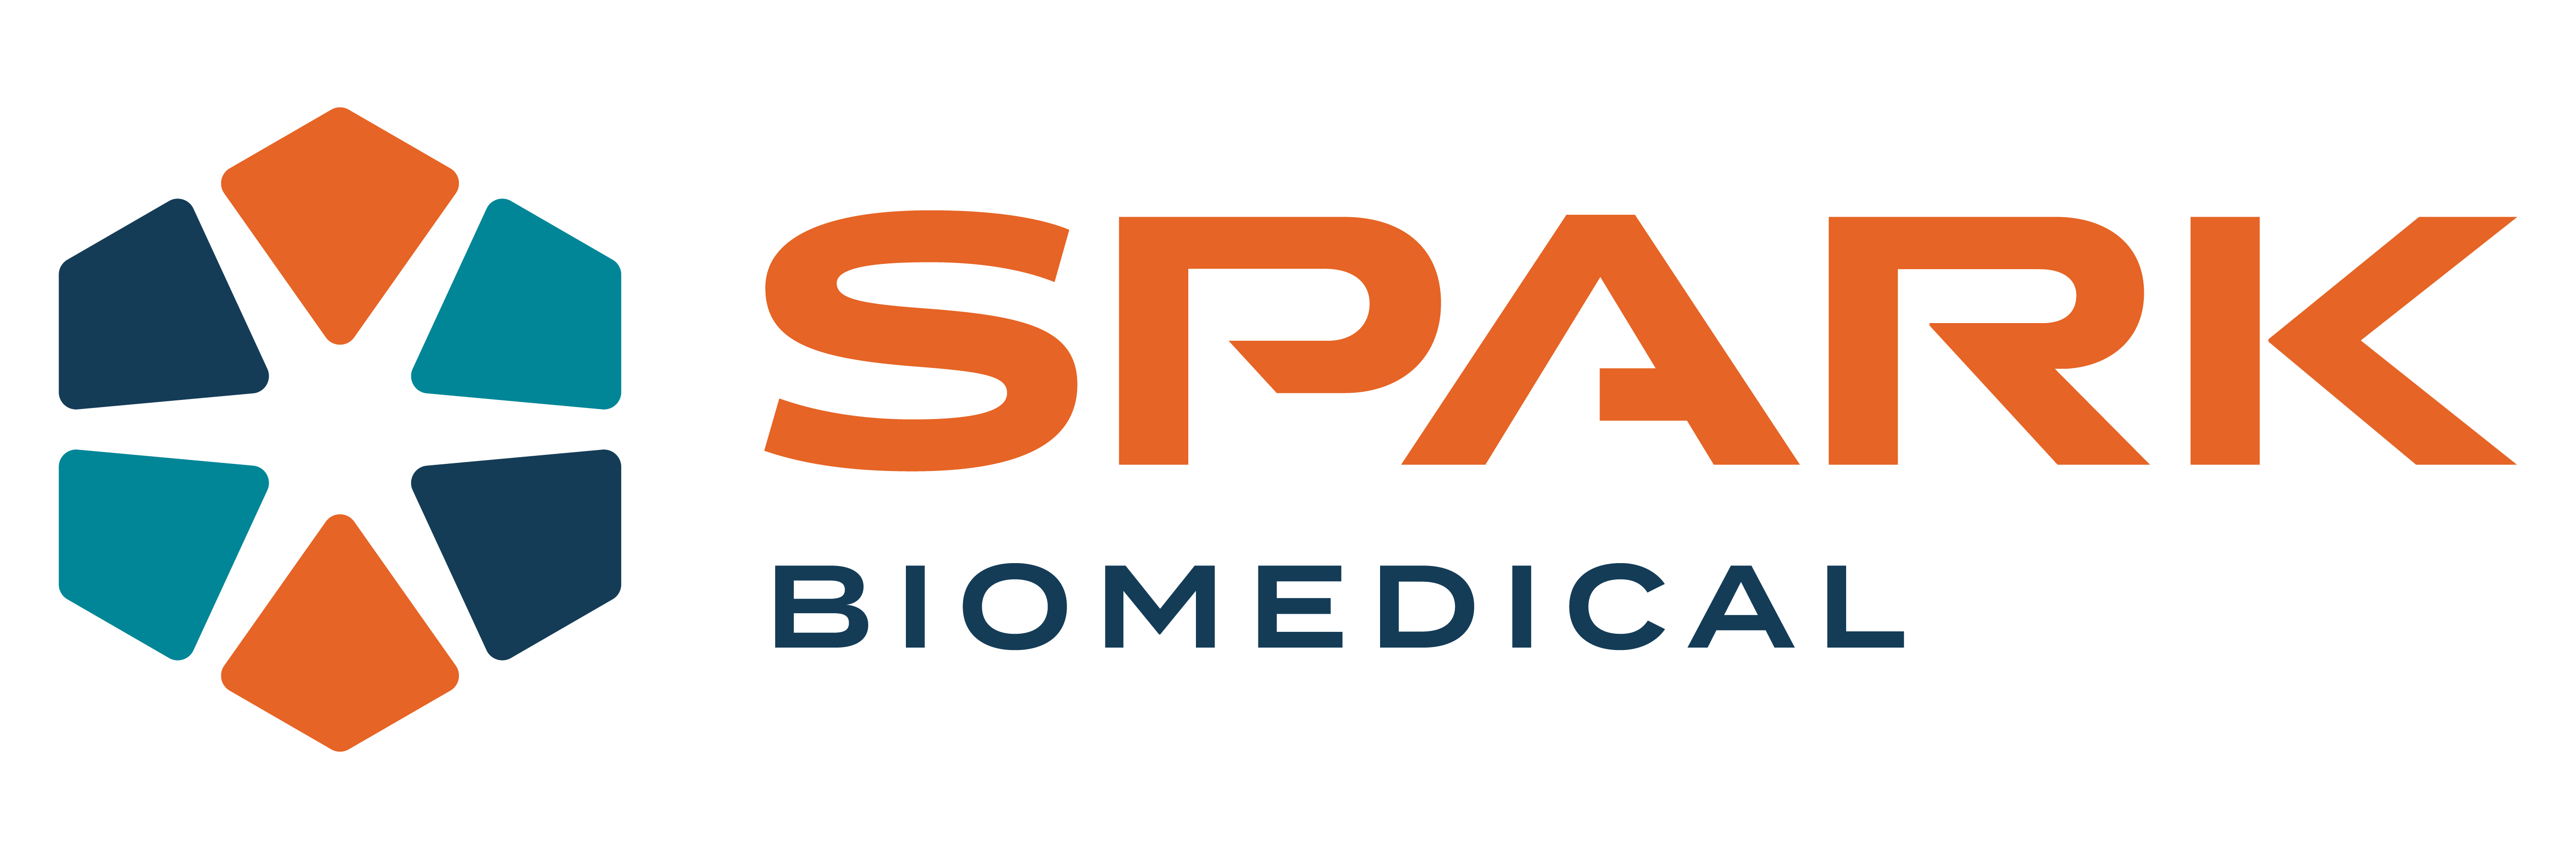 Spark Biomedical